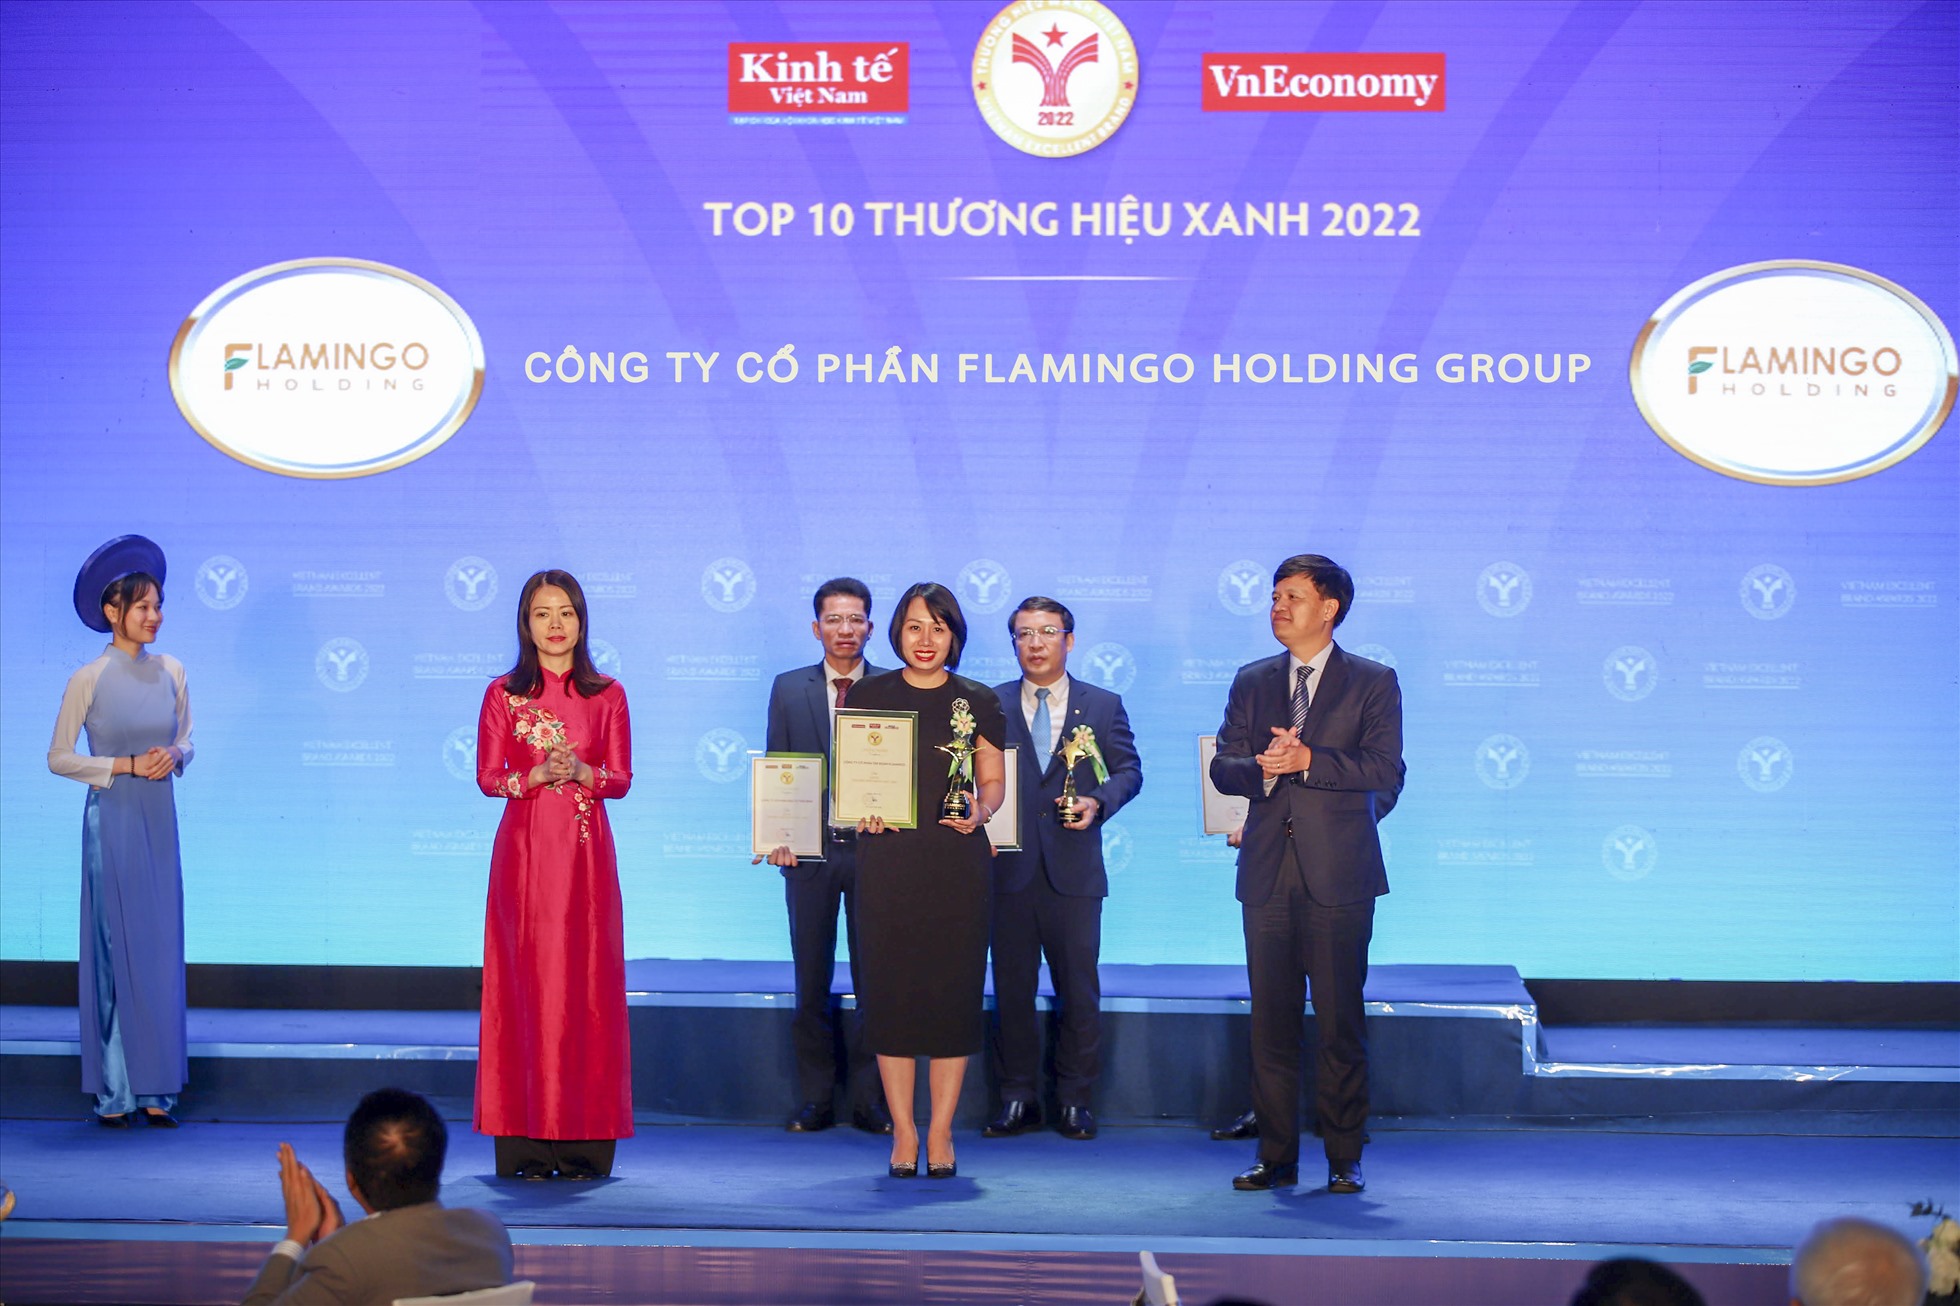 Phó Tổng Giám đốc Flamingo Holding Group – bà Nguyễn Thanh Mai nhận danh hiệu Top 10 Thương hiệu Xanh 2022 cho Tập đoàn Flamingo